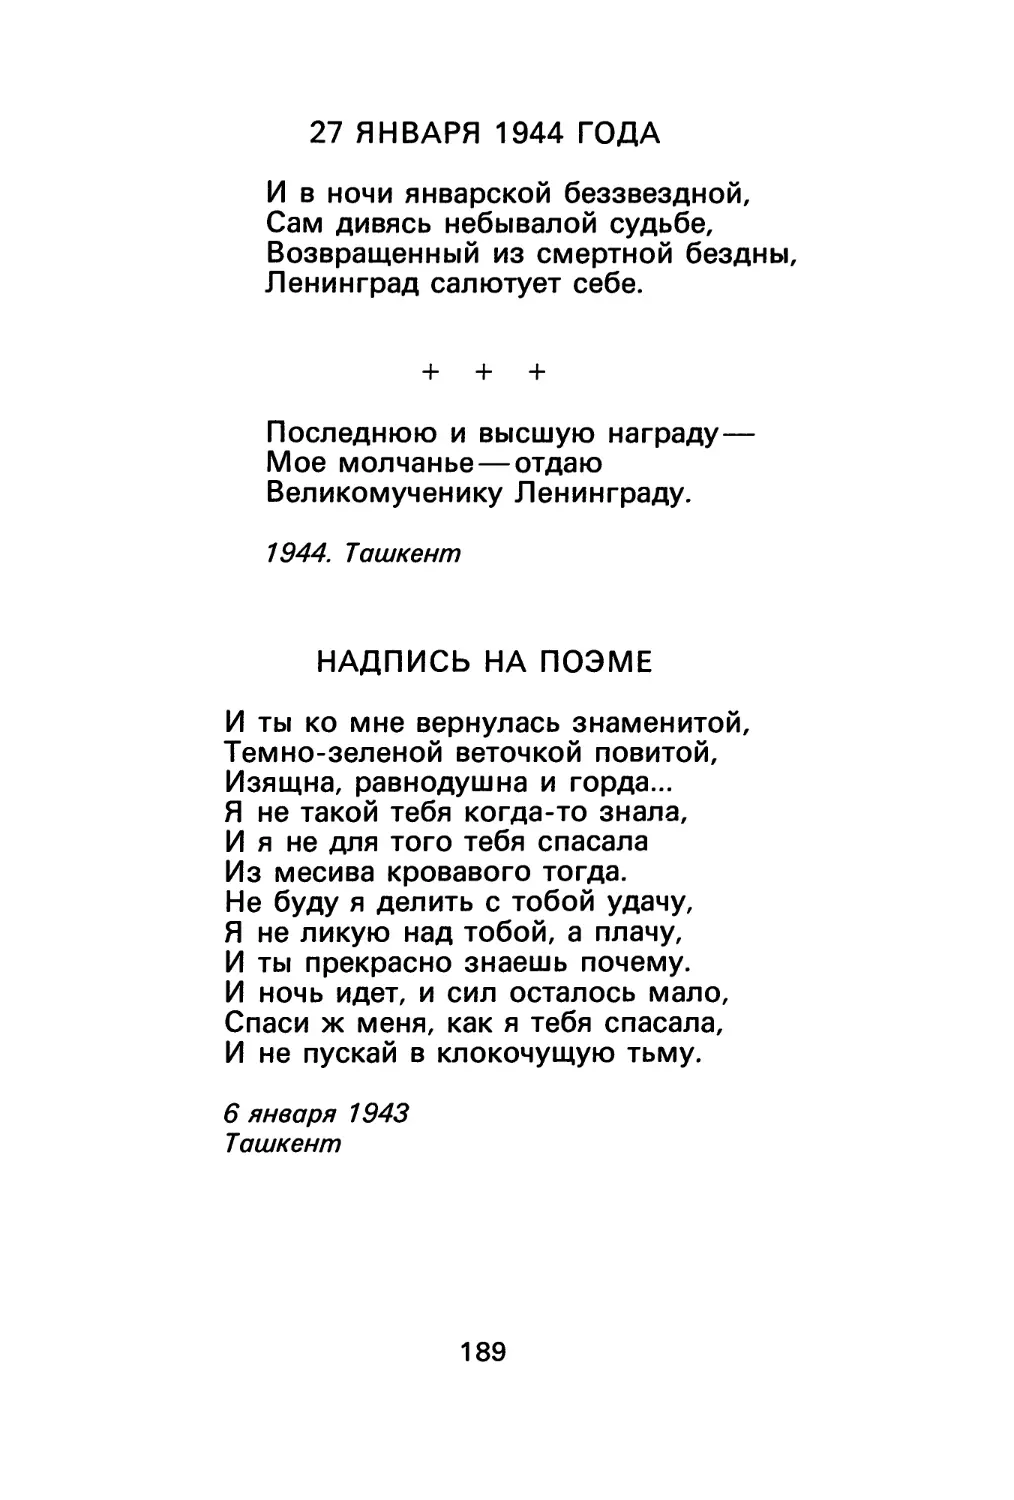 27 января 1944 года
«Последнюю и высшую награду...»
Надпись на поэме